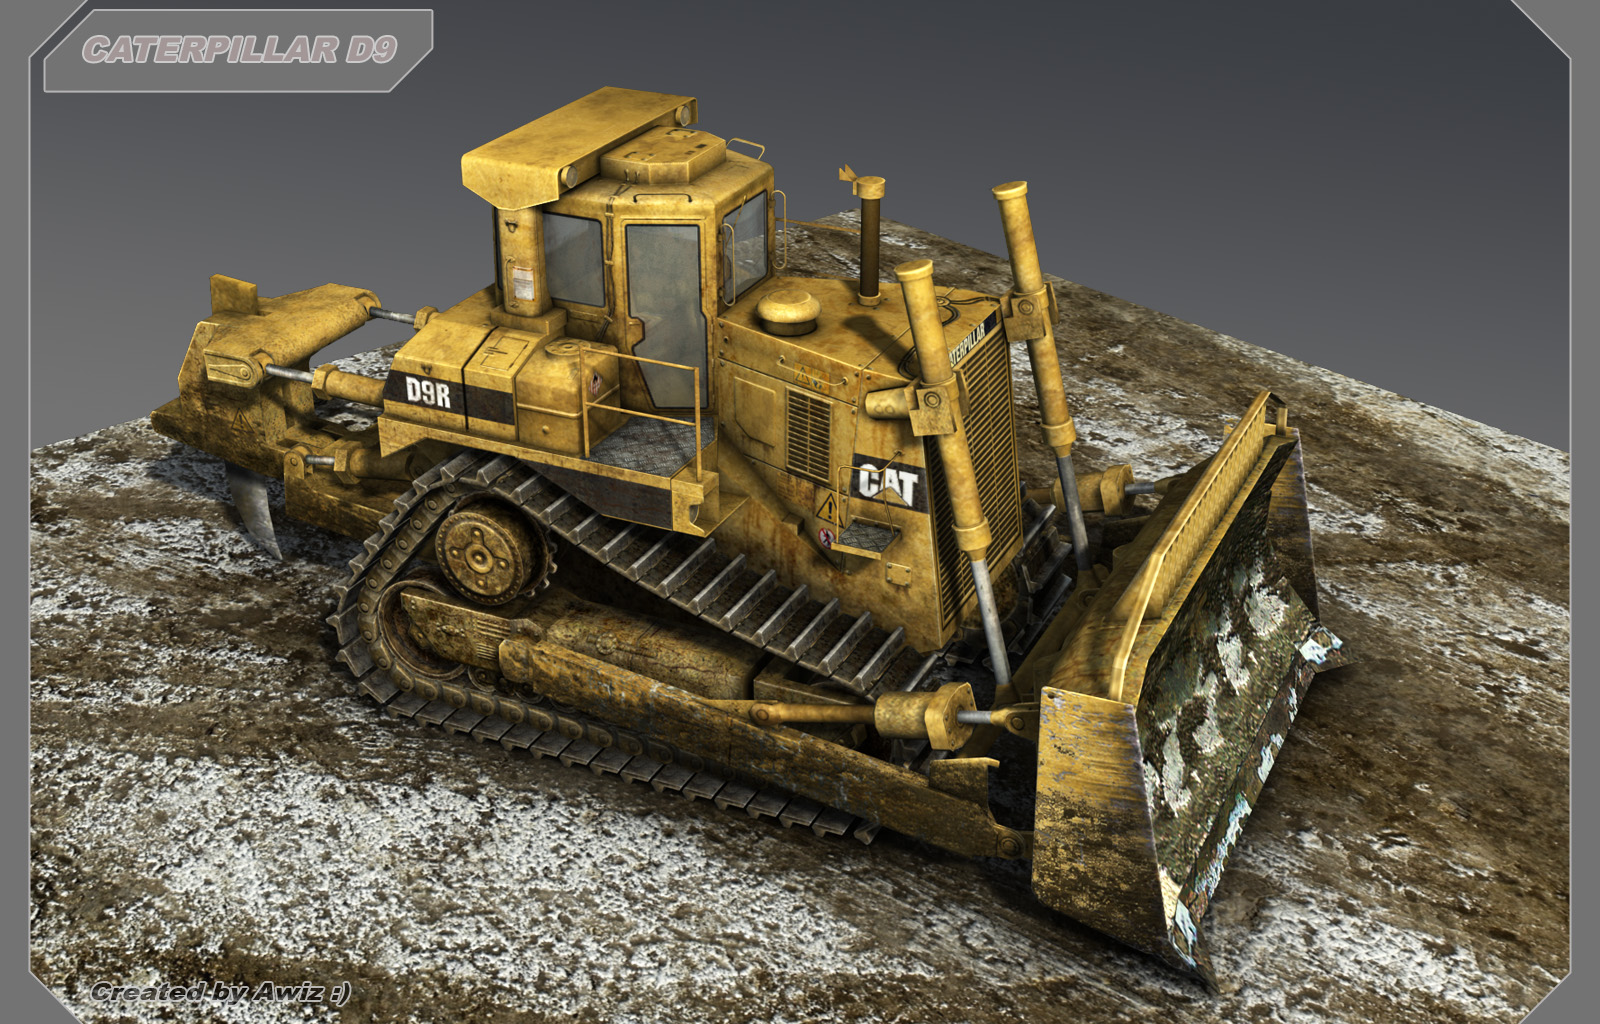 Bulldozer Caterpillar D9 by Awiz 1600x1024